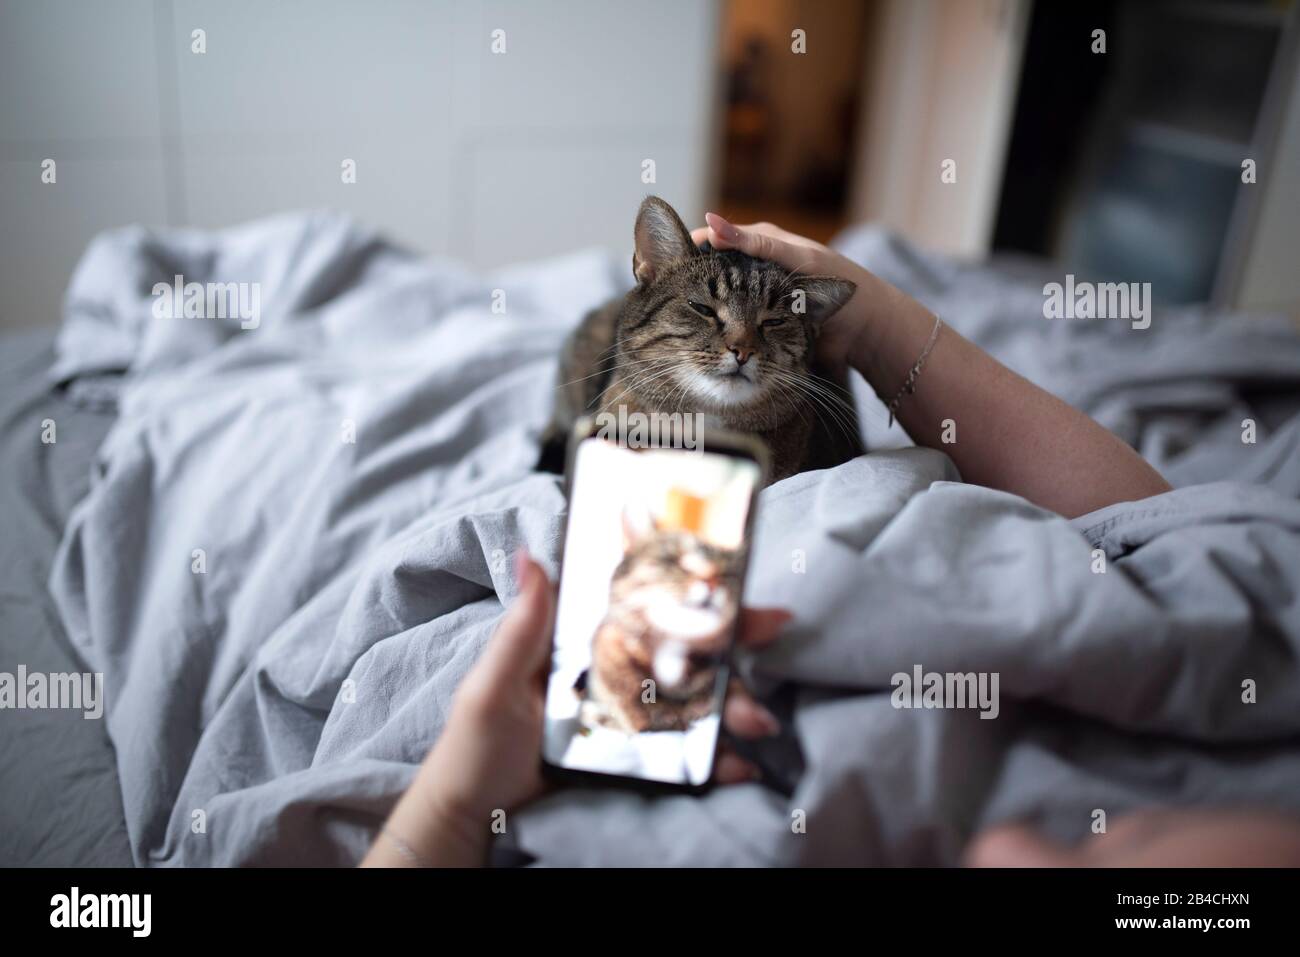 une femme imreconnaissable posée dans un lit en traçant des tabby domestique shorthair chat photographier avec un smartphone Banque D'Images